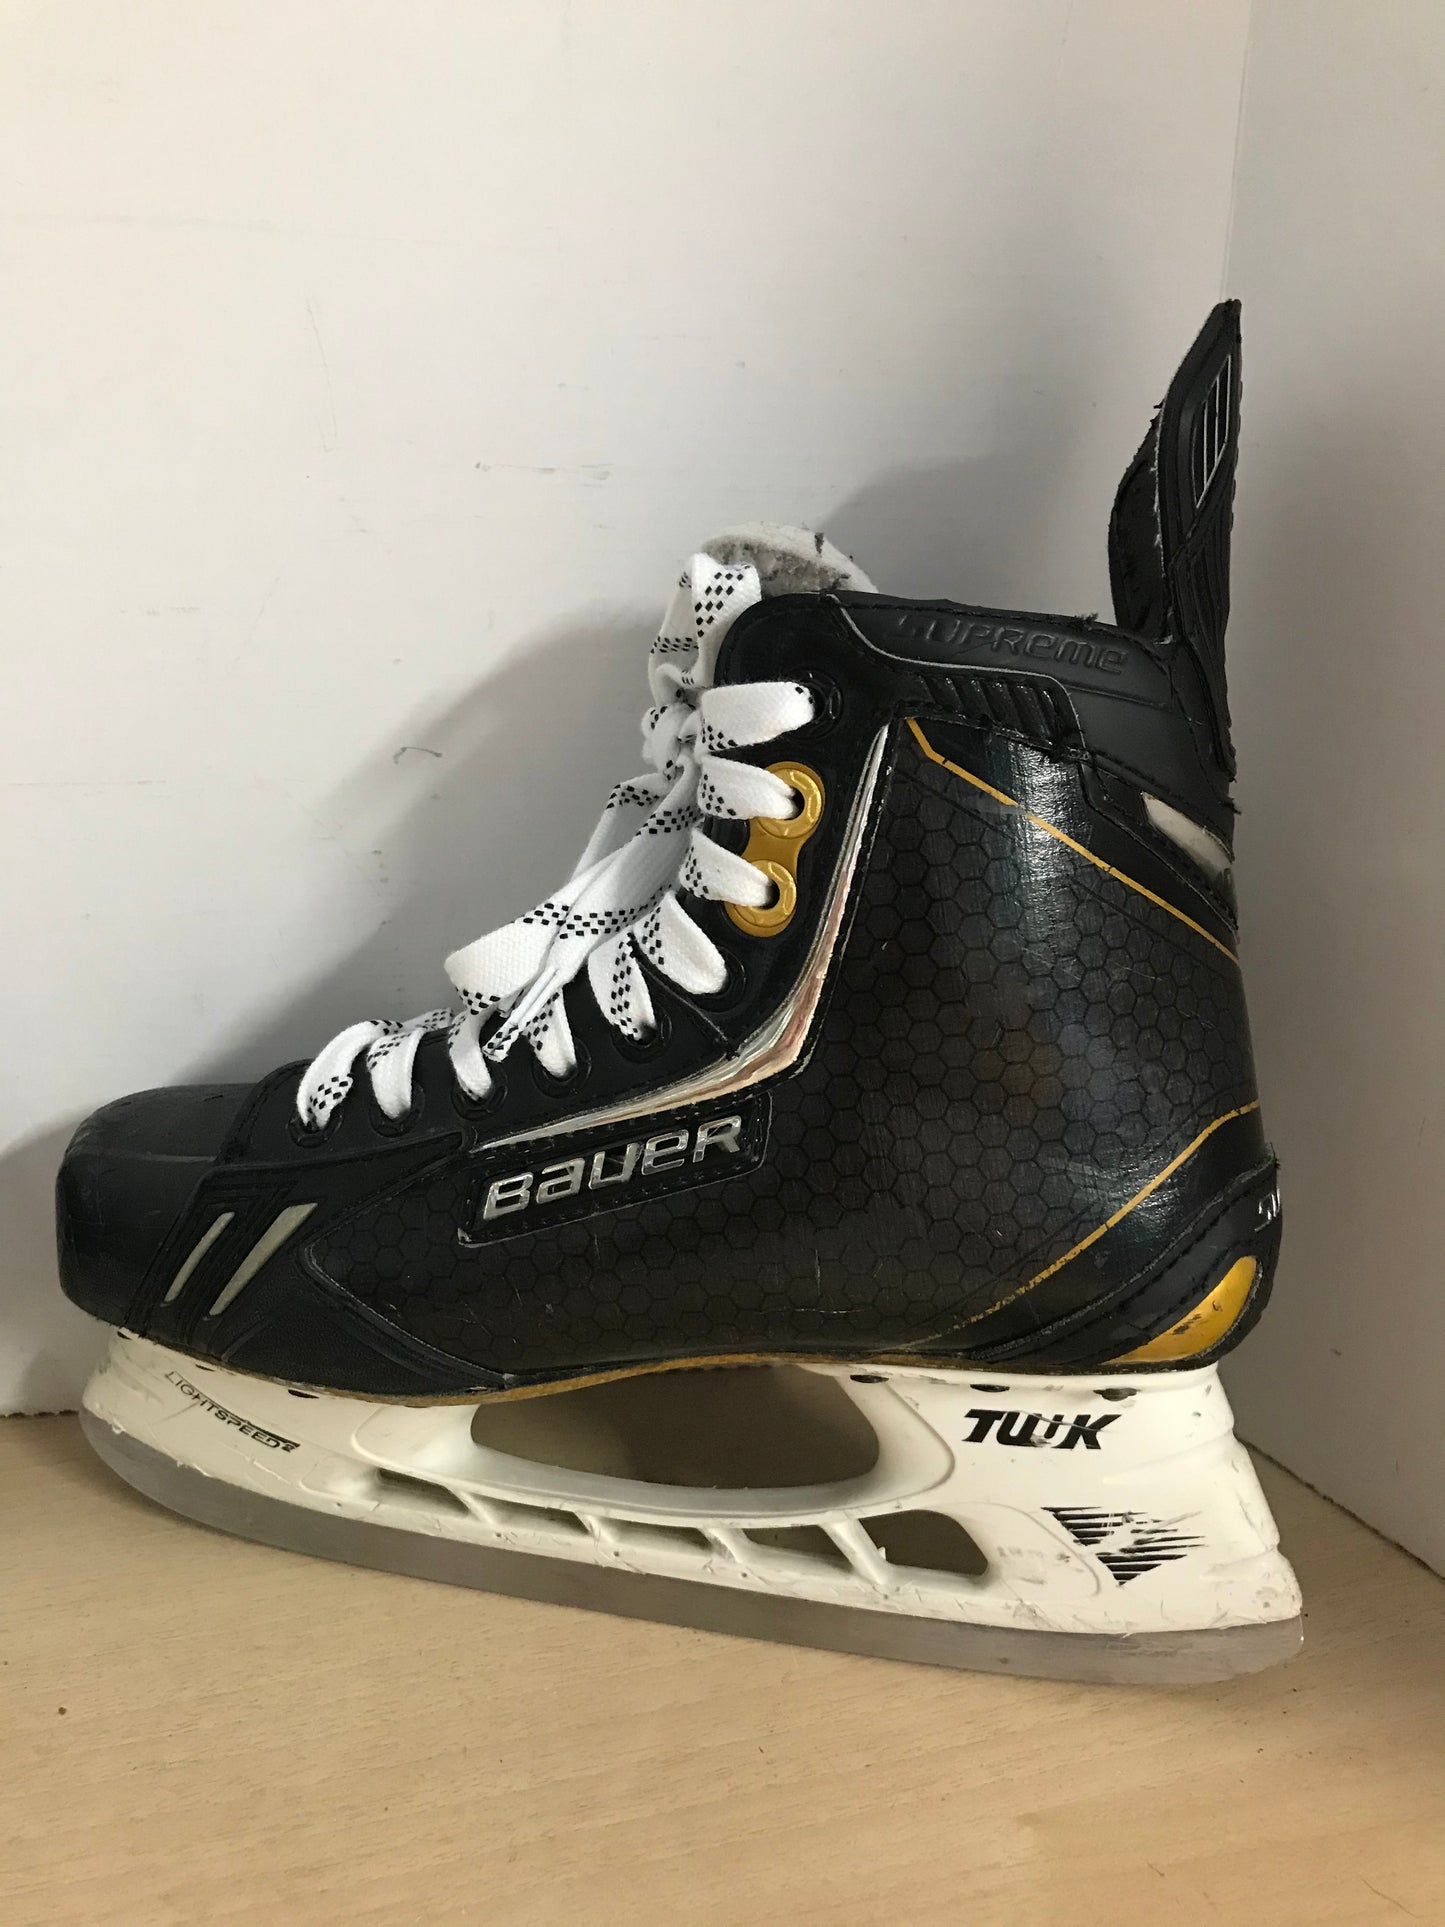 Hockey Skates Child Size 6 Shoe Size Junior Bauer Supreme One.9 Minor Wear Scratches